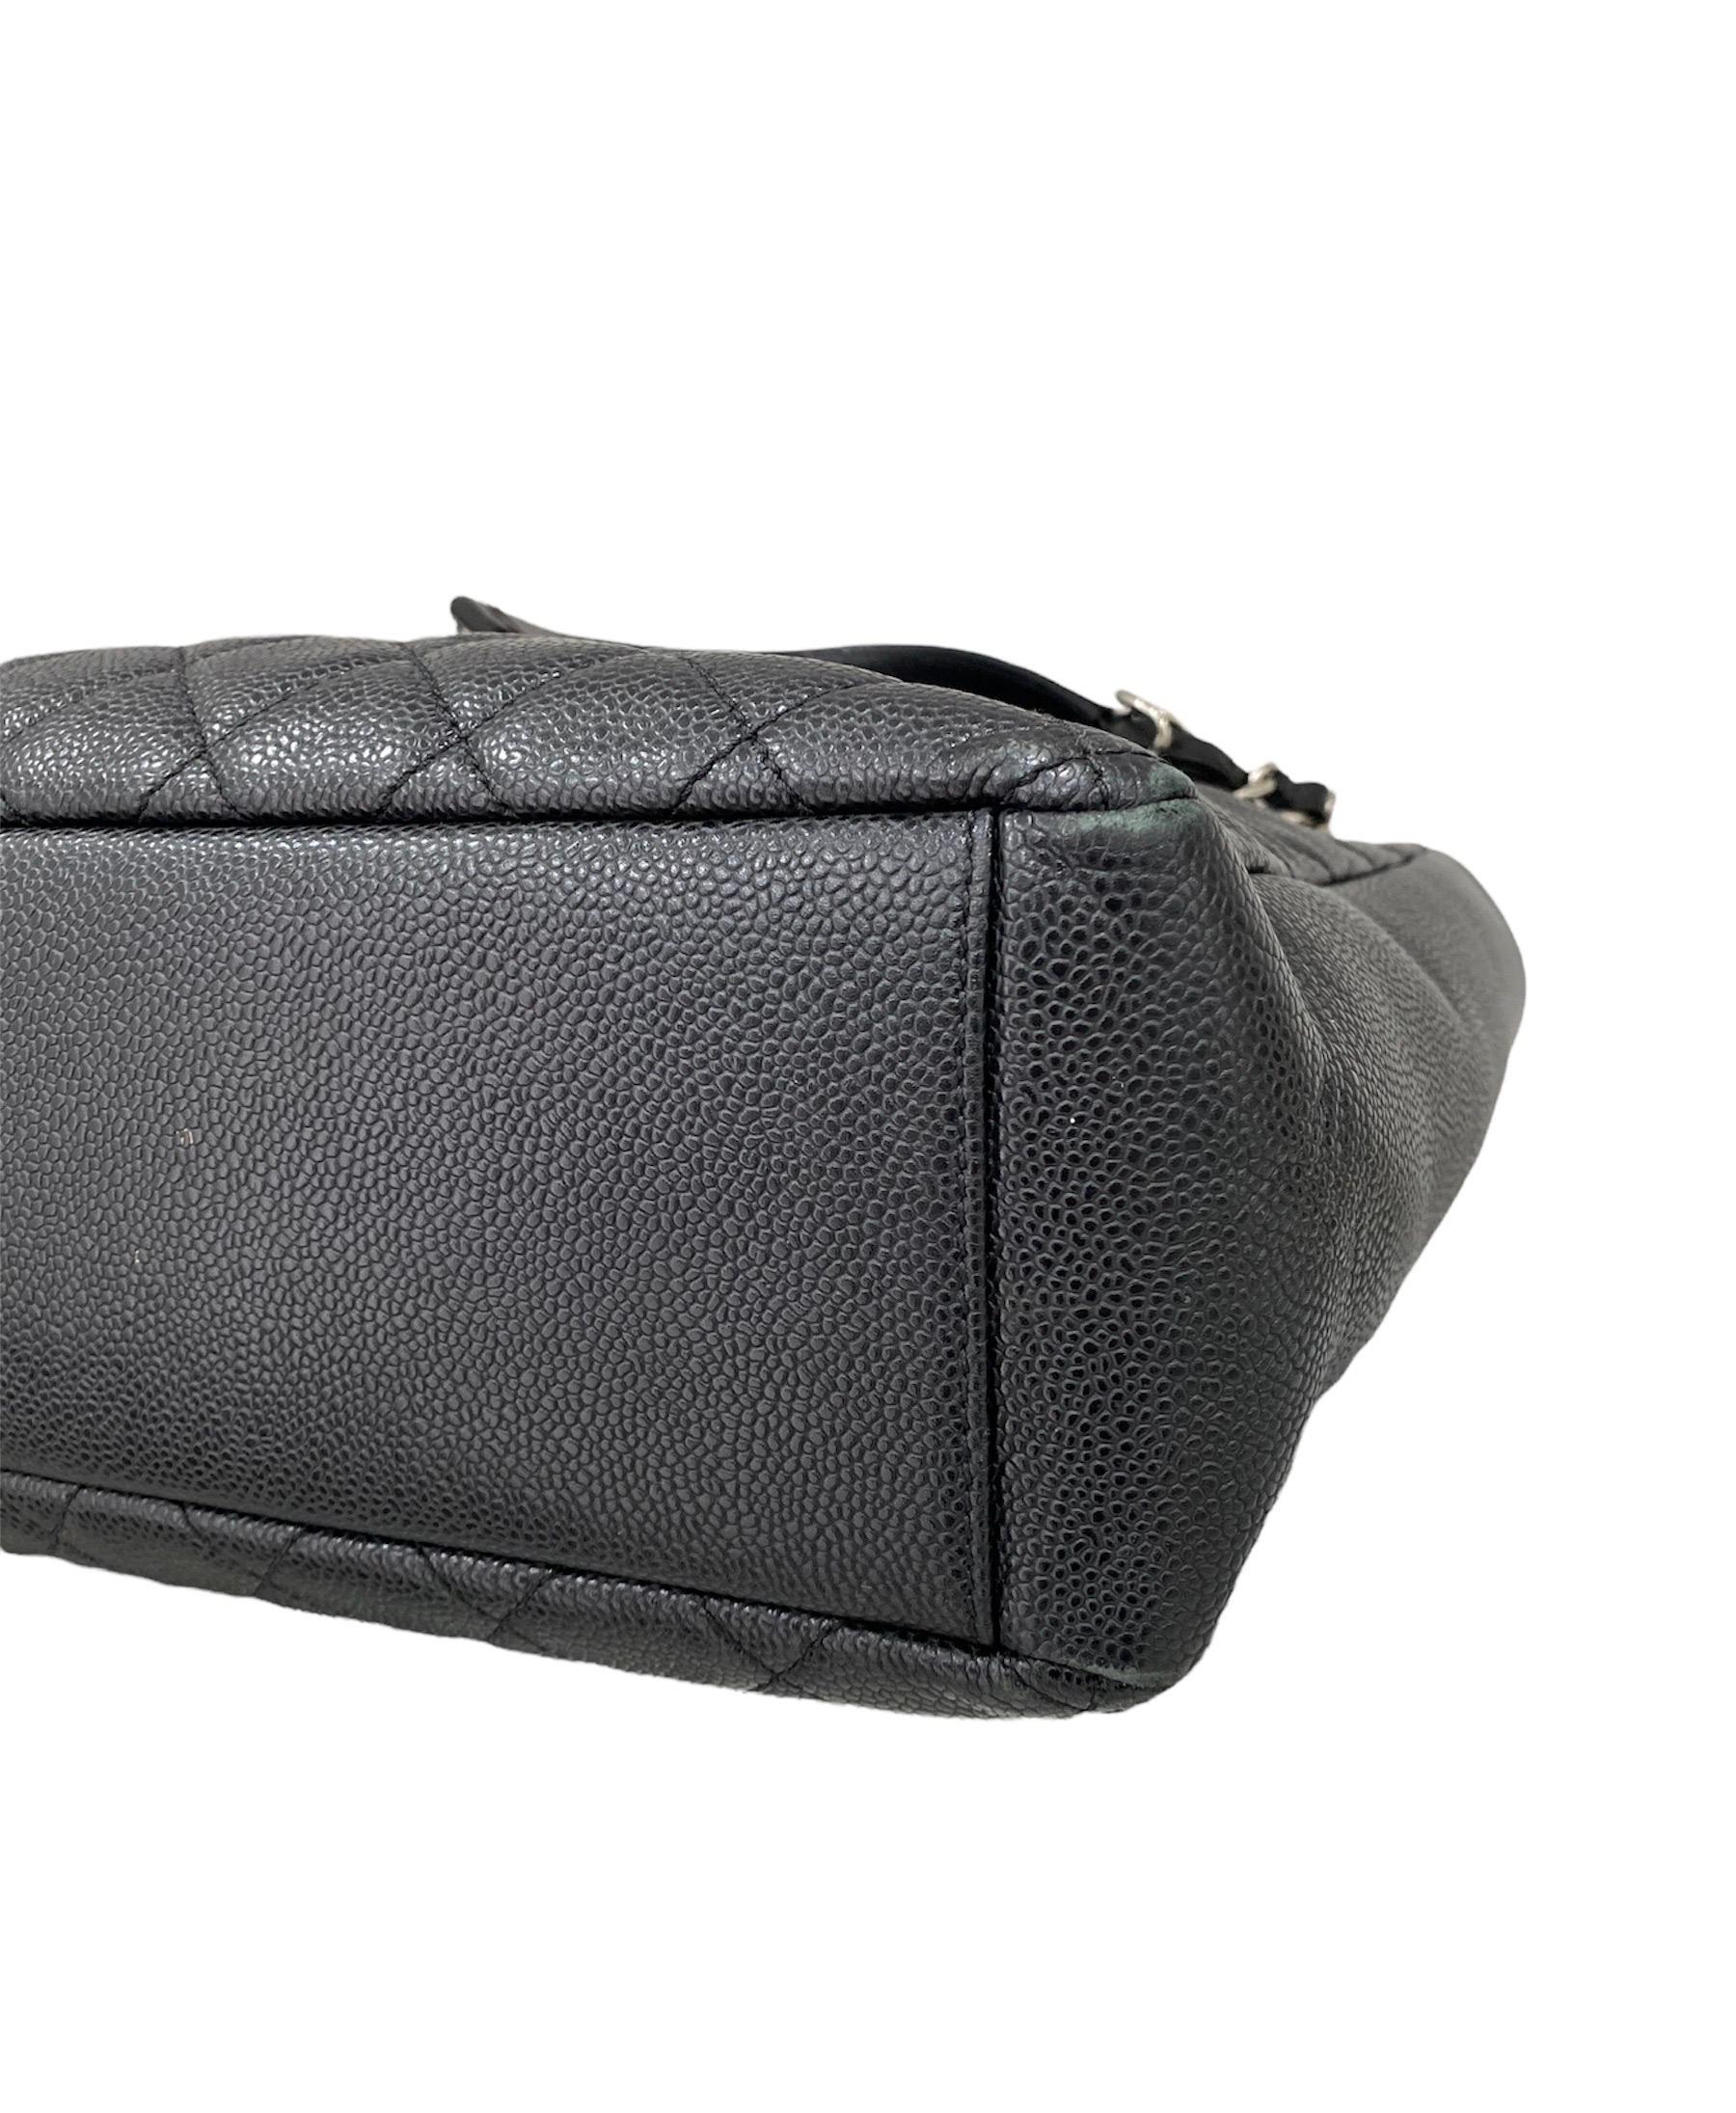 2013 Chanel PST Black Caviar Leather Shoulder Bag  4